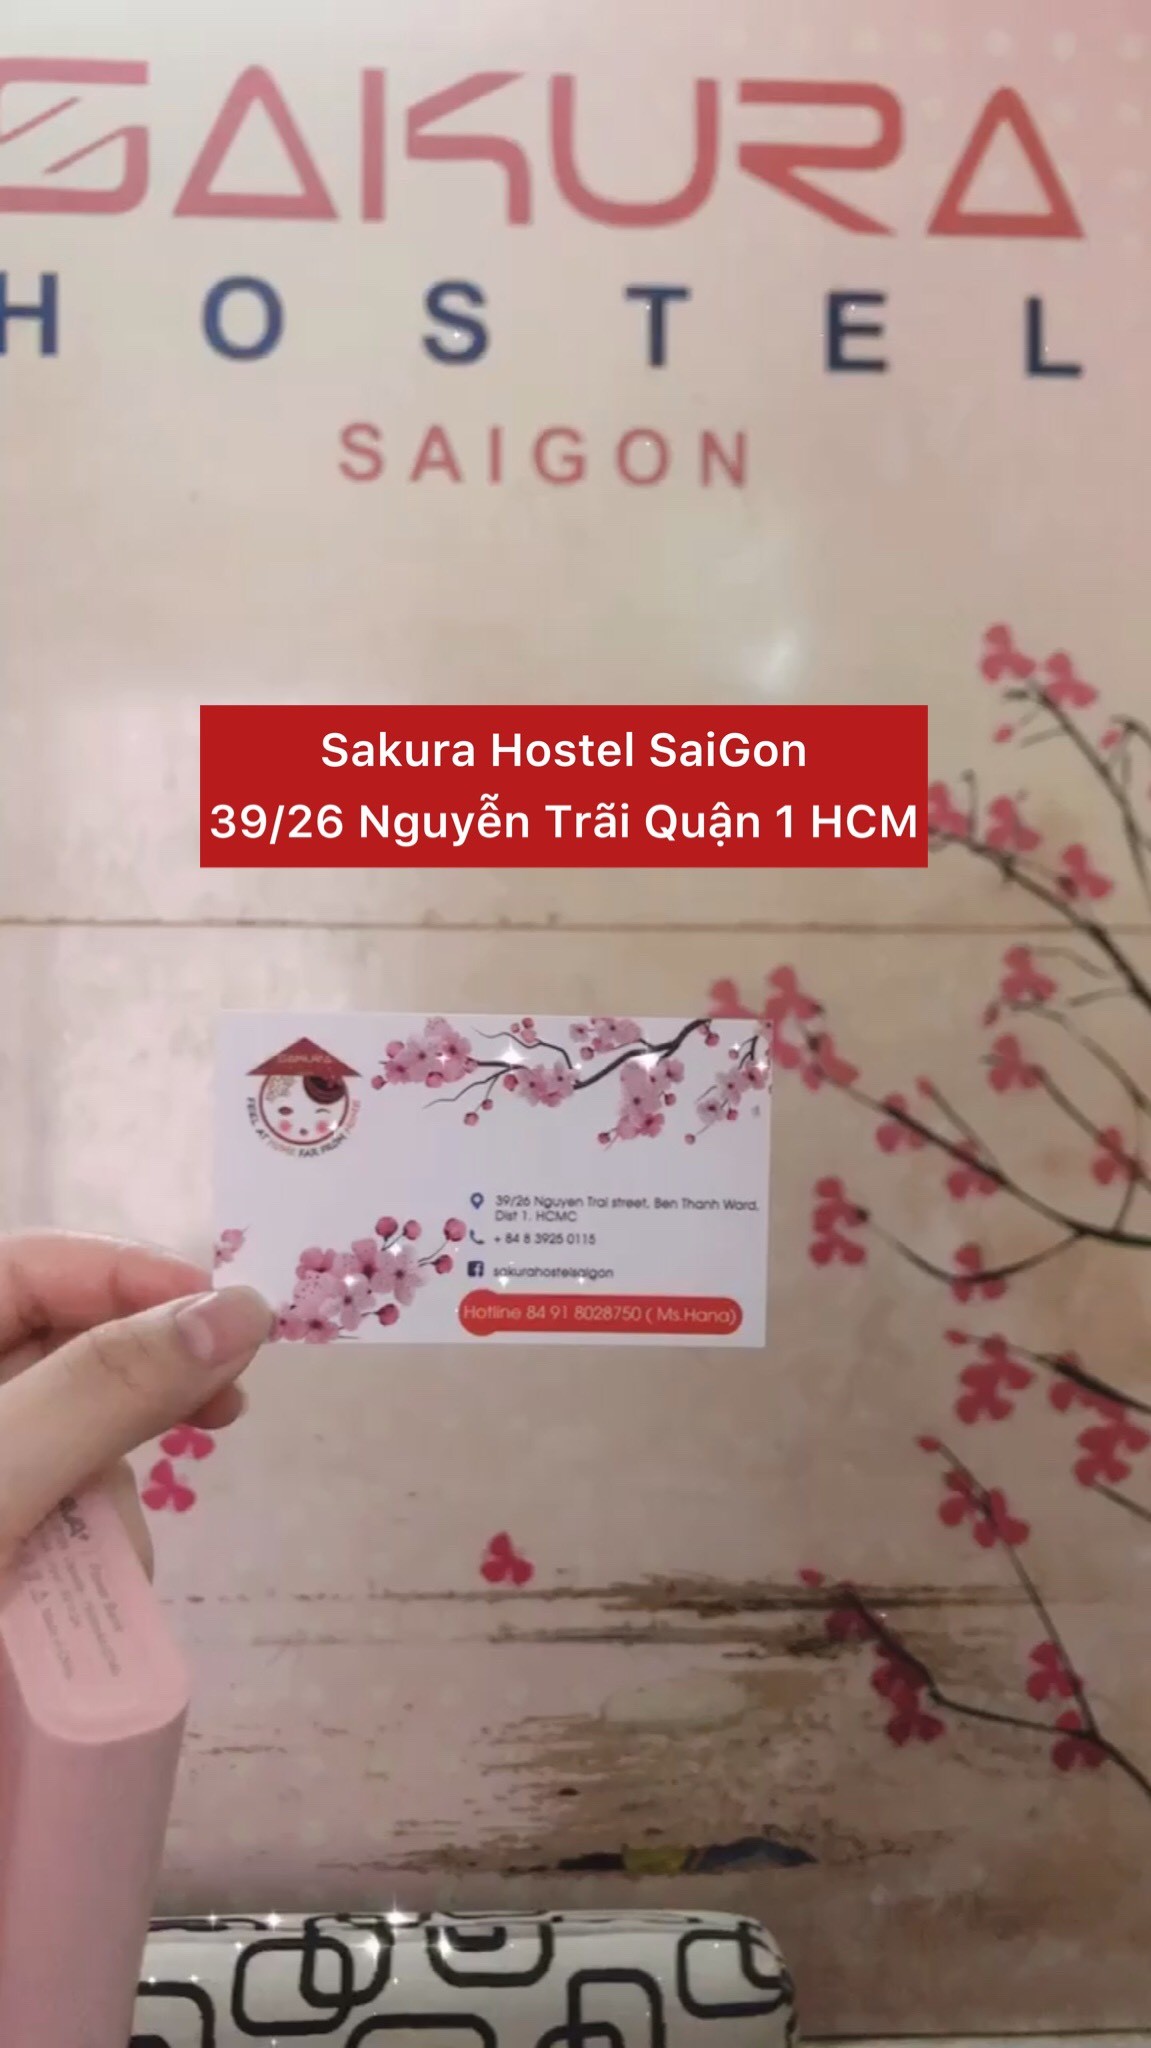 Sakura Hostel Saigon cho thuê phòng toạ lạc tại quận 1 Hồ Chí Minh